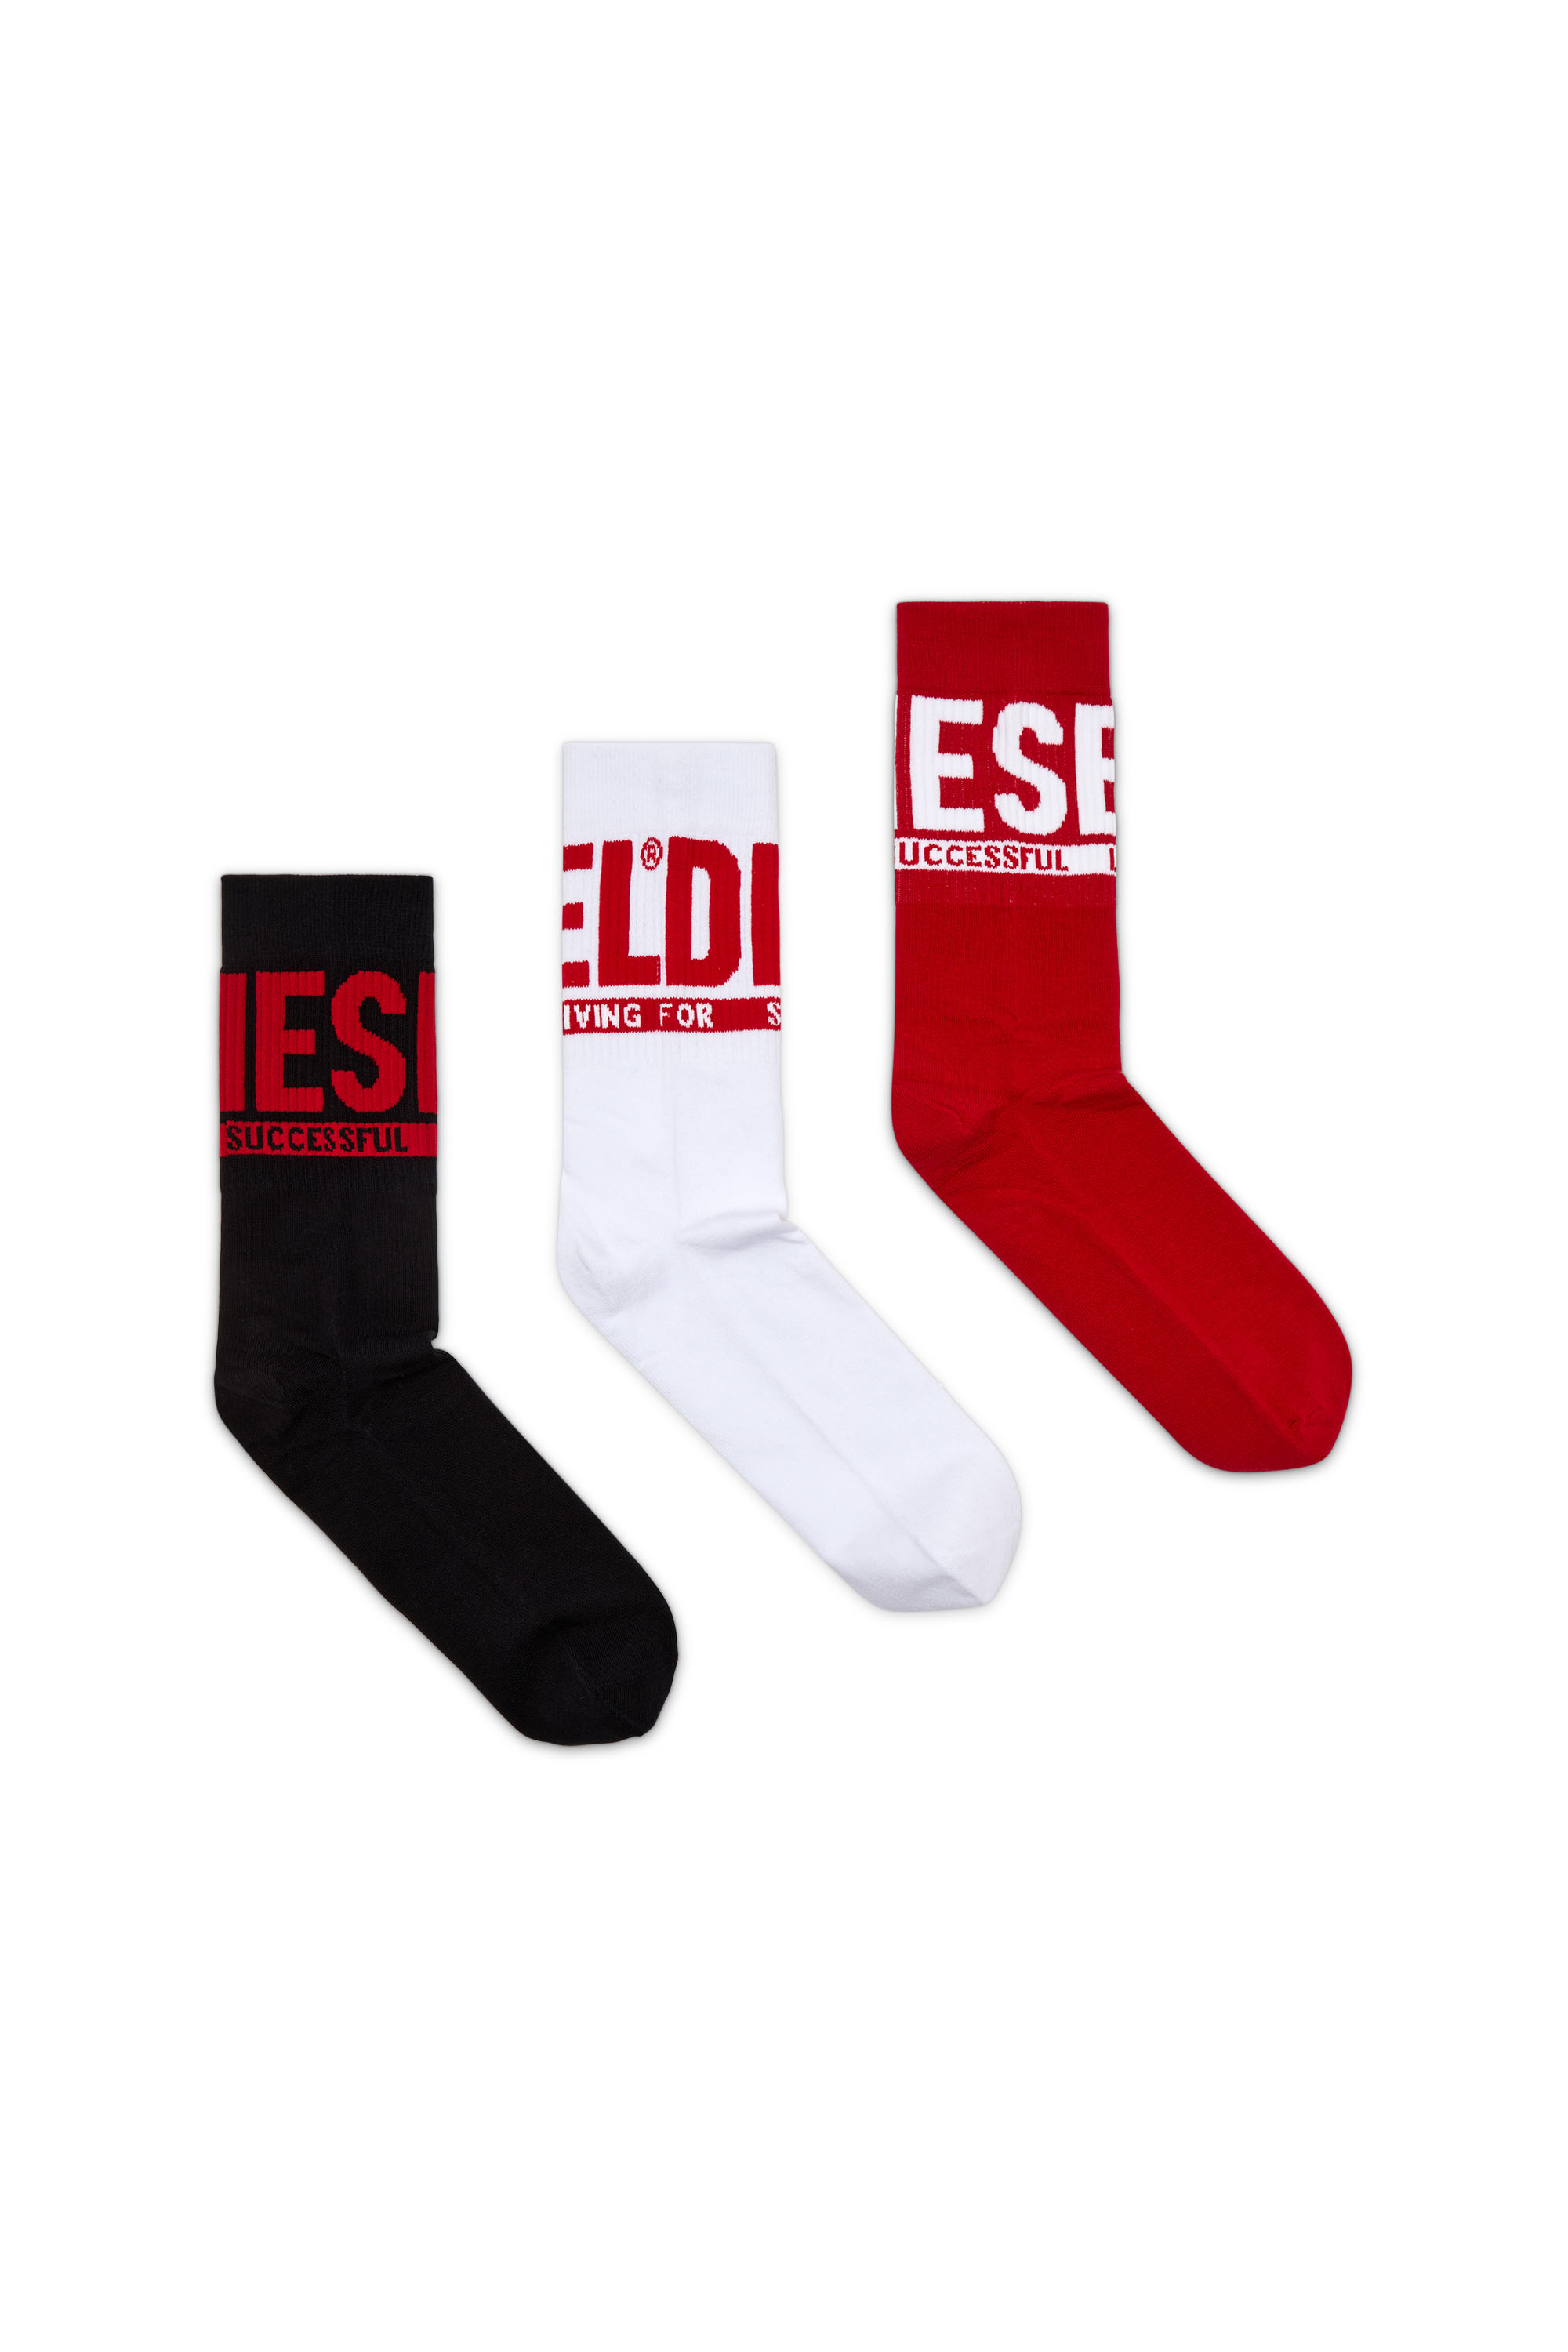 Diesel - Set de 3 pares de calcetines con logo Diesel - Calcetines - Hombre - Multicolor